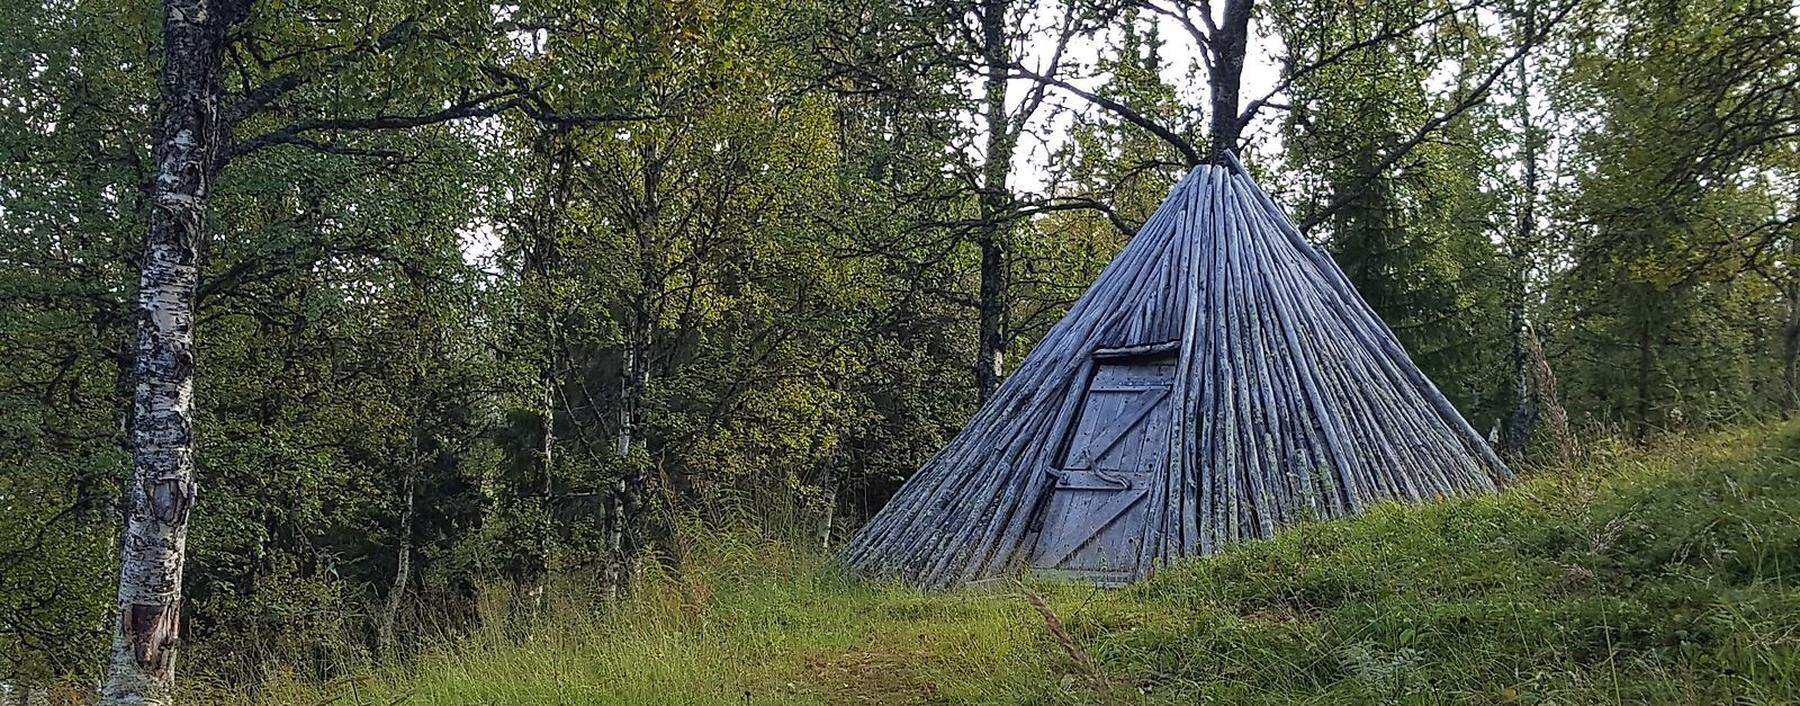 Halbnomadisches Leben: Die Kote, ist ein samisches Zelt. Einige stehen in Fatmomakke, einem spirituellen Ort.